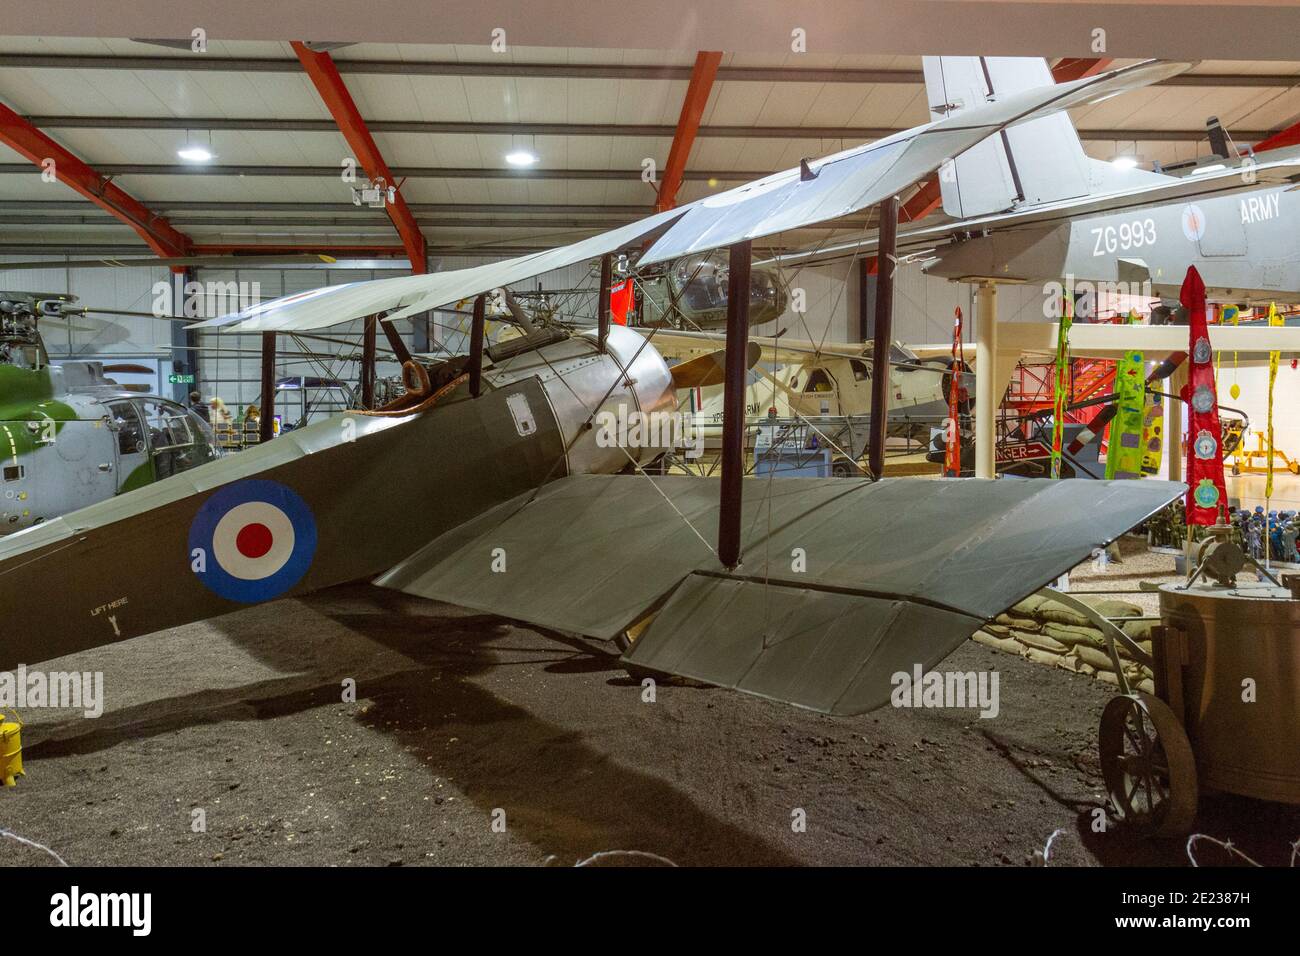 Un avion scout de Sopwith Pup exposé au musée de vol de l'Armée de terre, un musée de l'aviation militaire à Stockbridge, Hampshire, Royaume-Uni. Banque D'Images